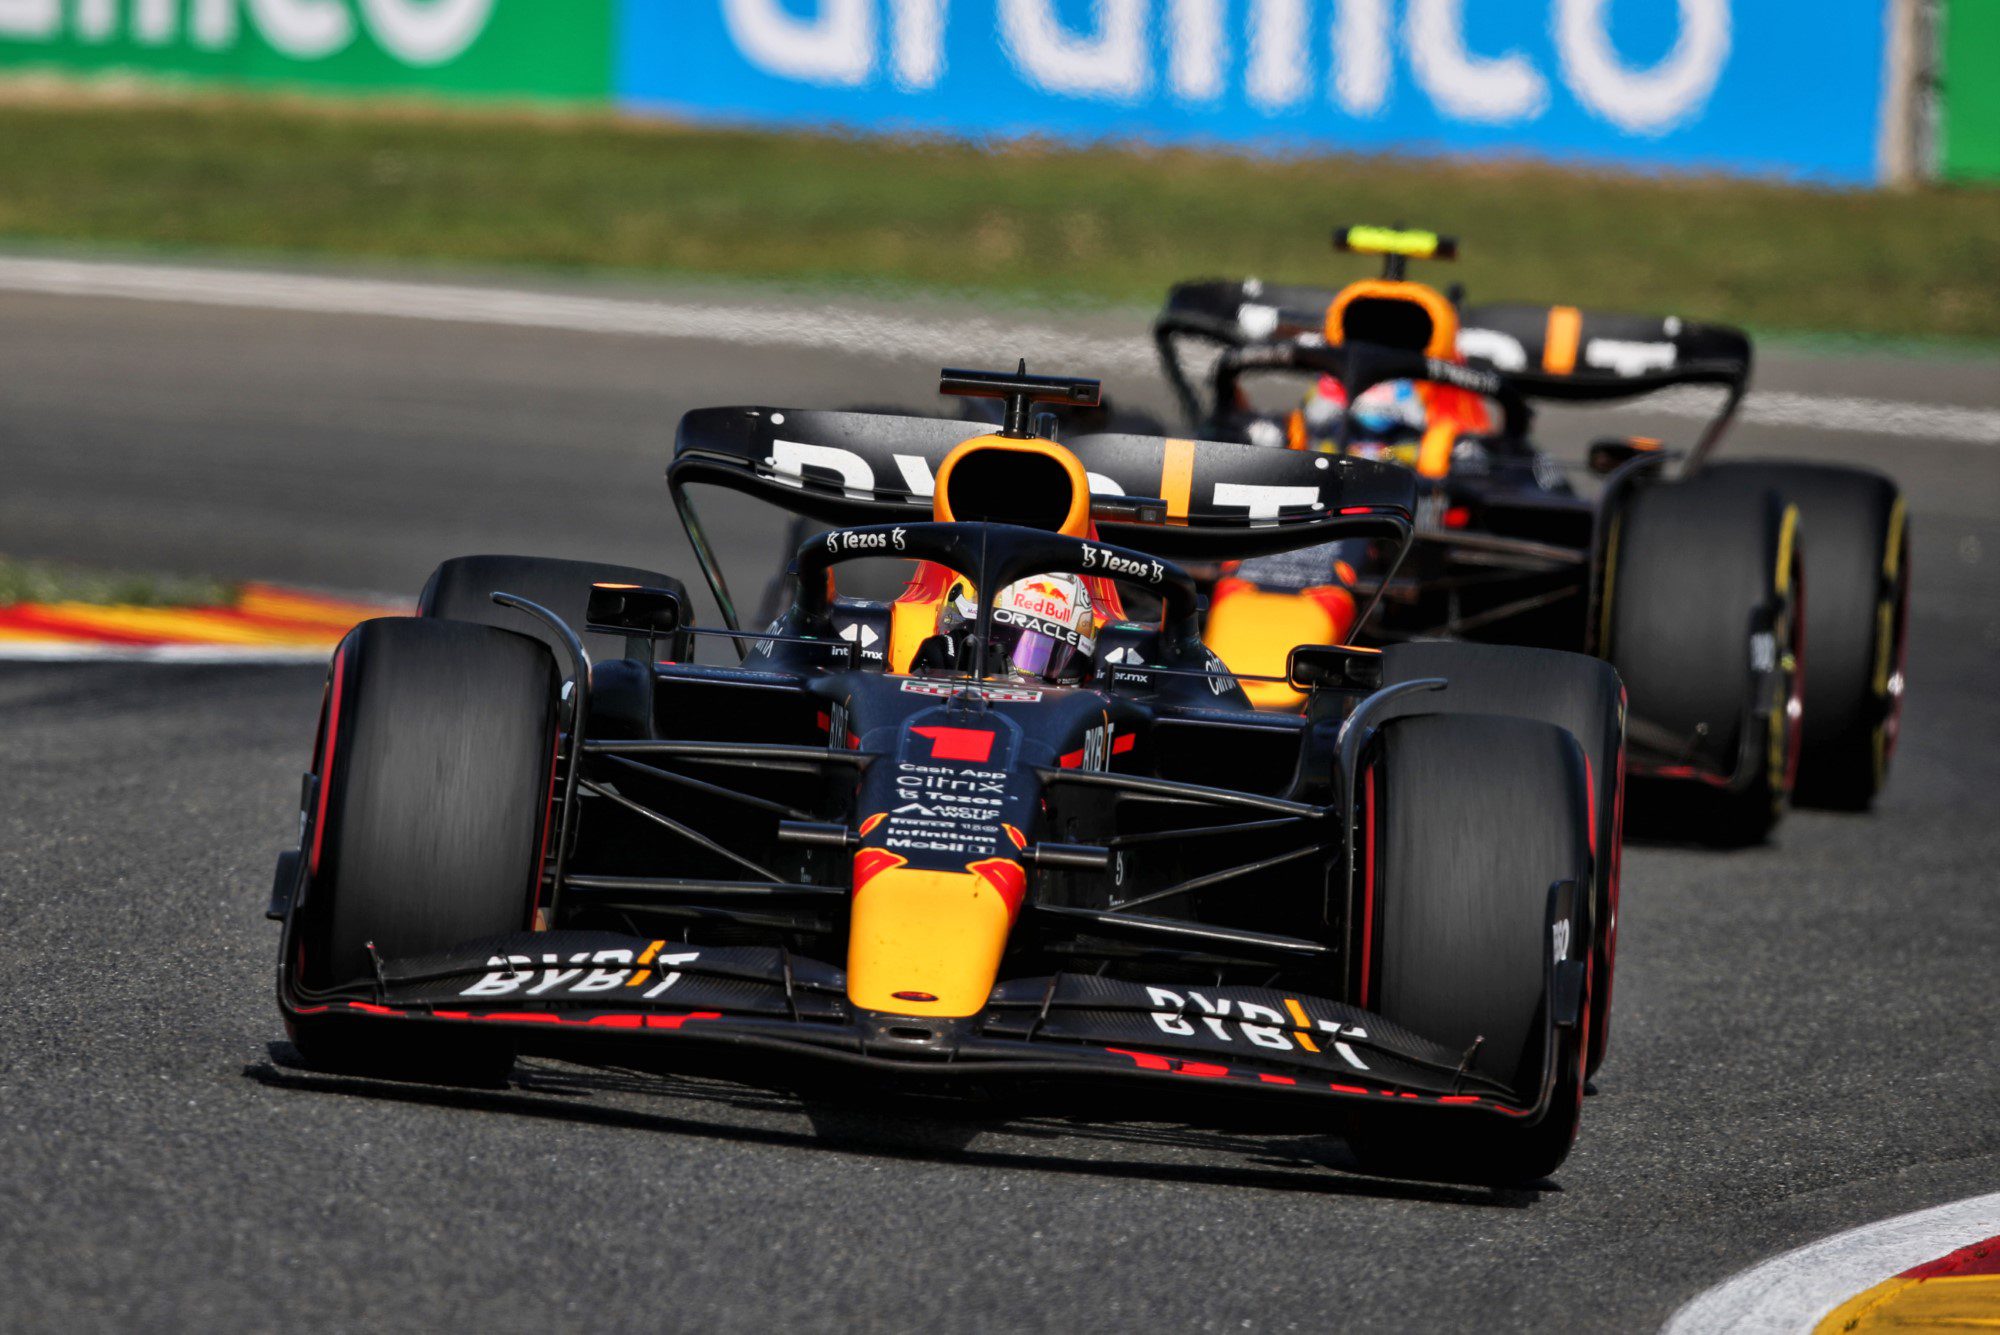 Incierto acuerdo entre Red Bull y Porsche, posible alternativa a Honda